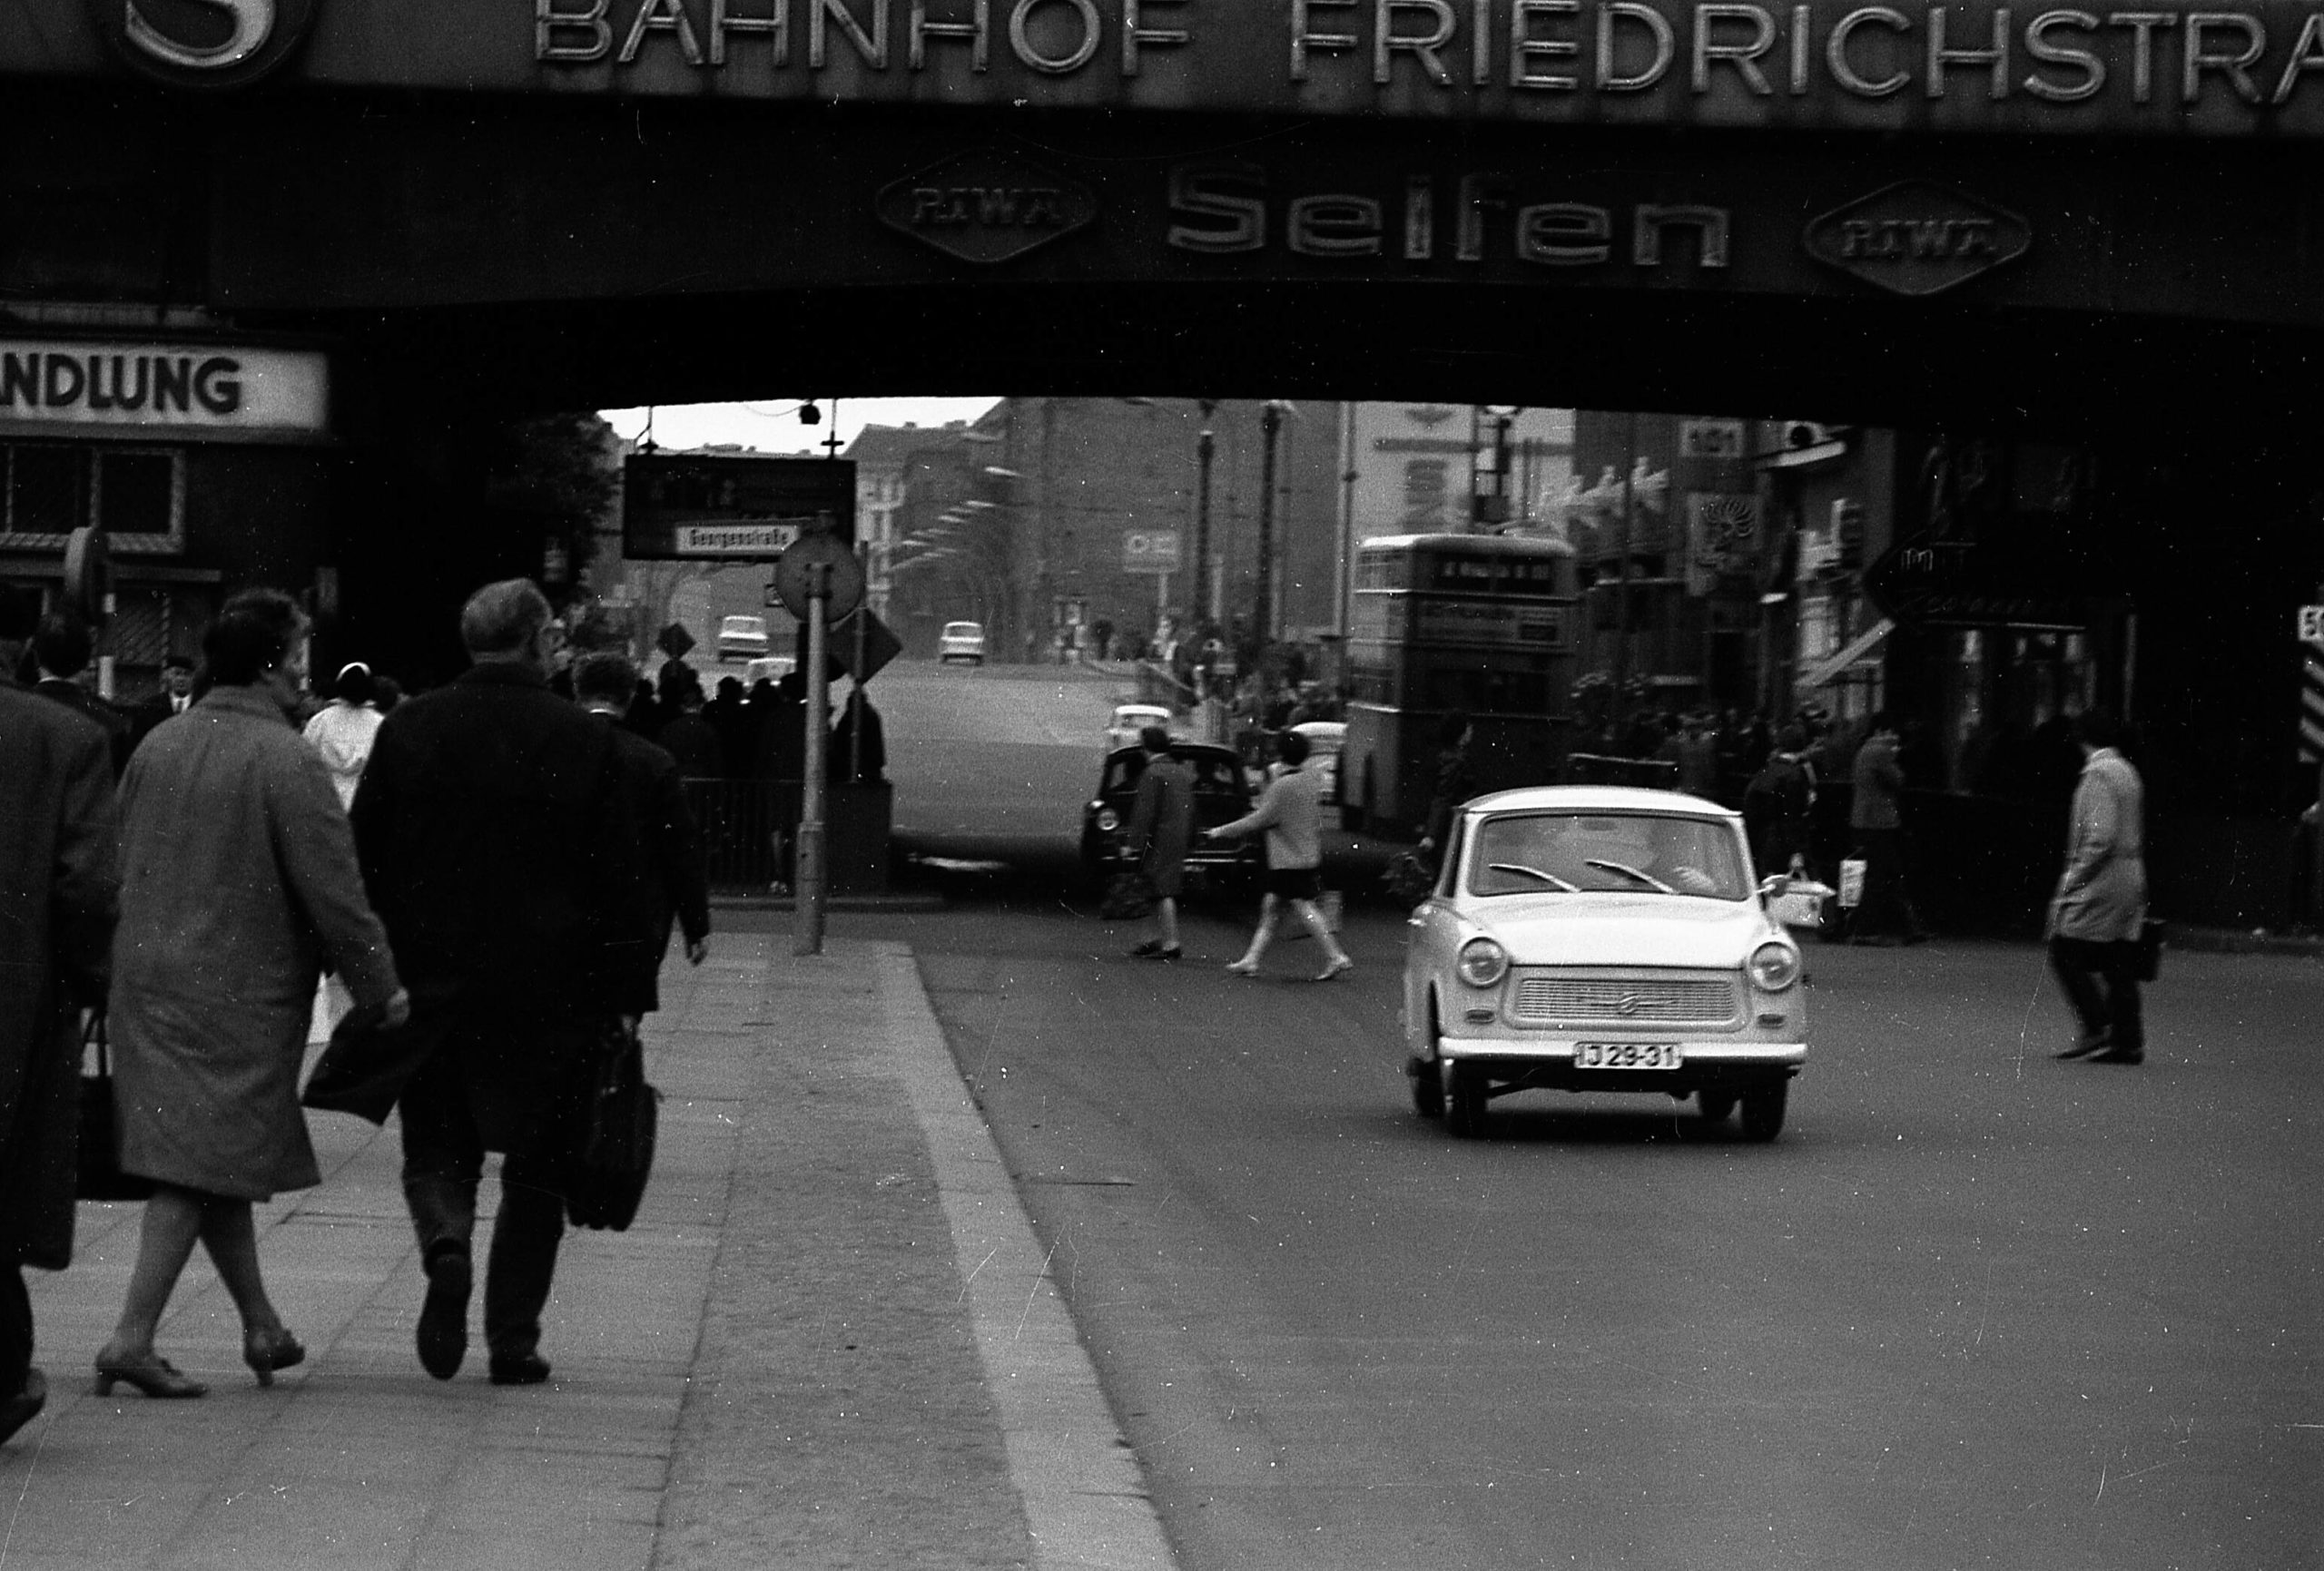 Bahnhöfe in Berlin: Von Nord nach Süd waren die Straßen an der Friedrichstraße immer offen.